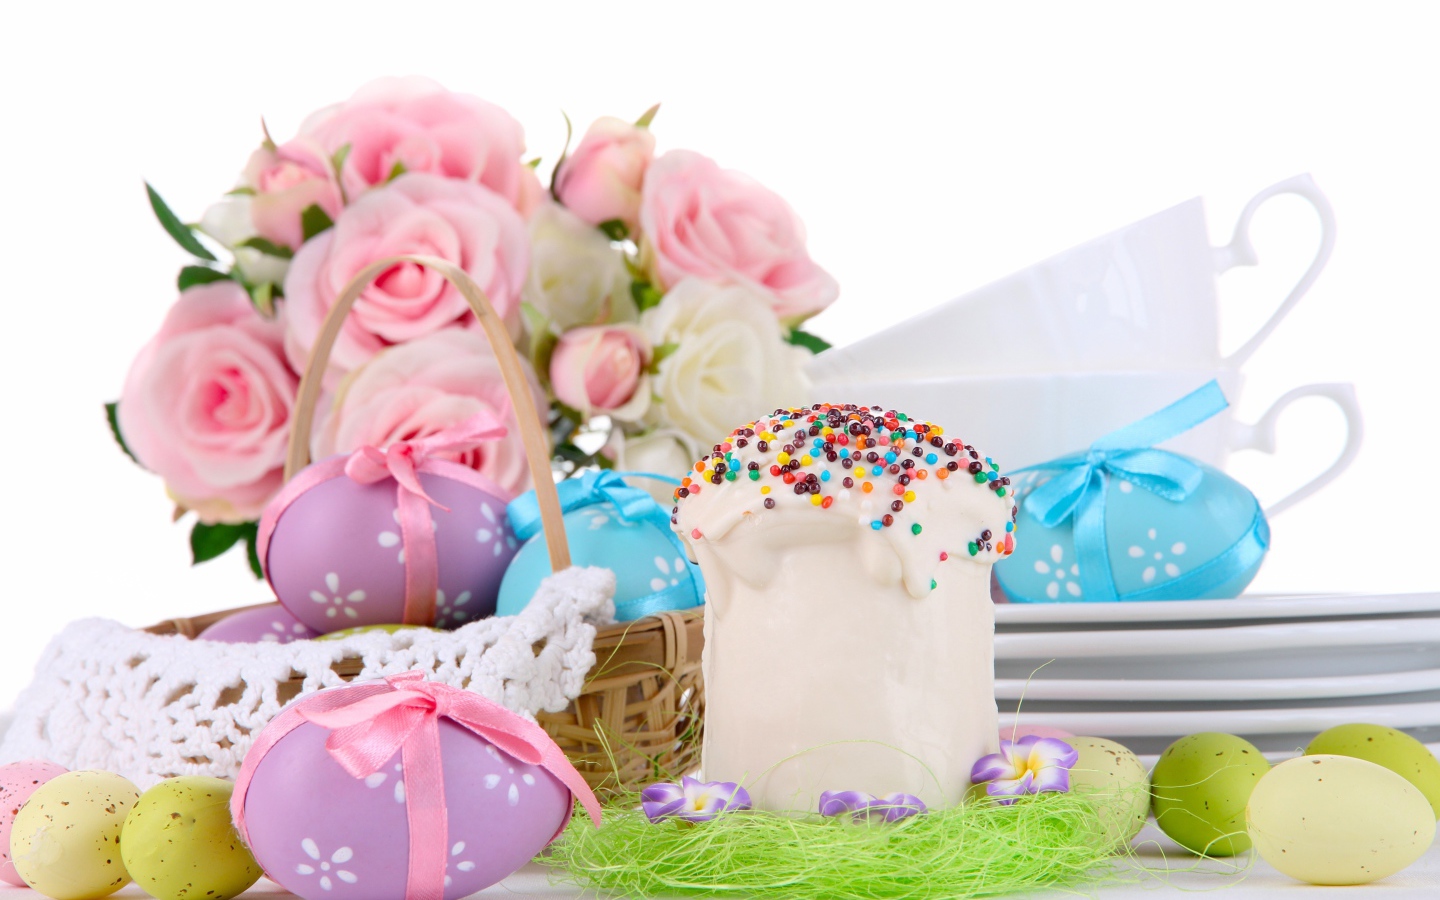 Пасхальный кулич, крашеные яйца и цветы на праздник